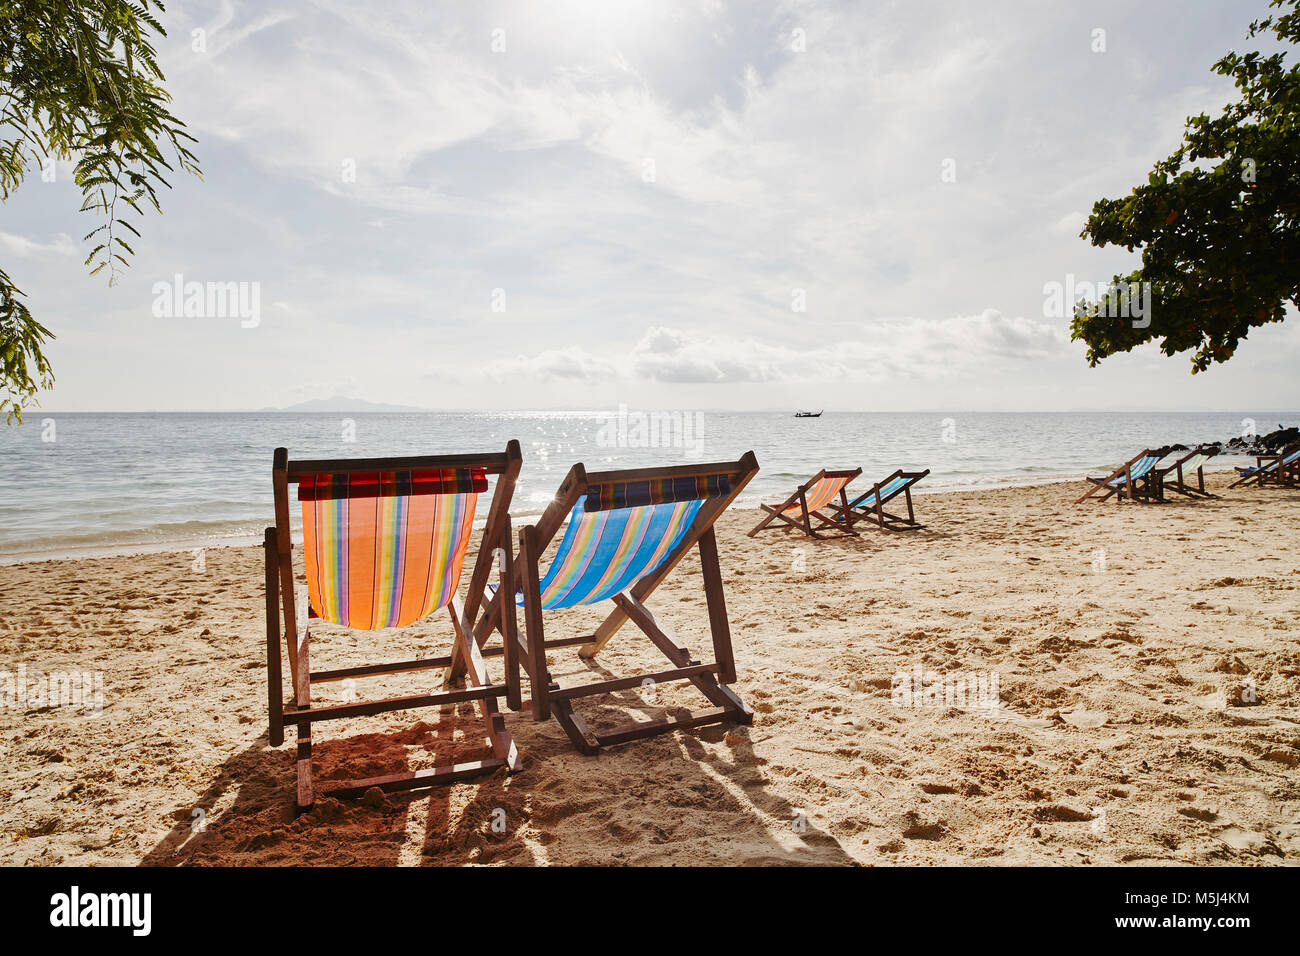 La Thaïlande, les îles Phi Phi, Ko Phi Phi, chaises longues sur la plage Banque D'Images